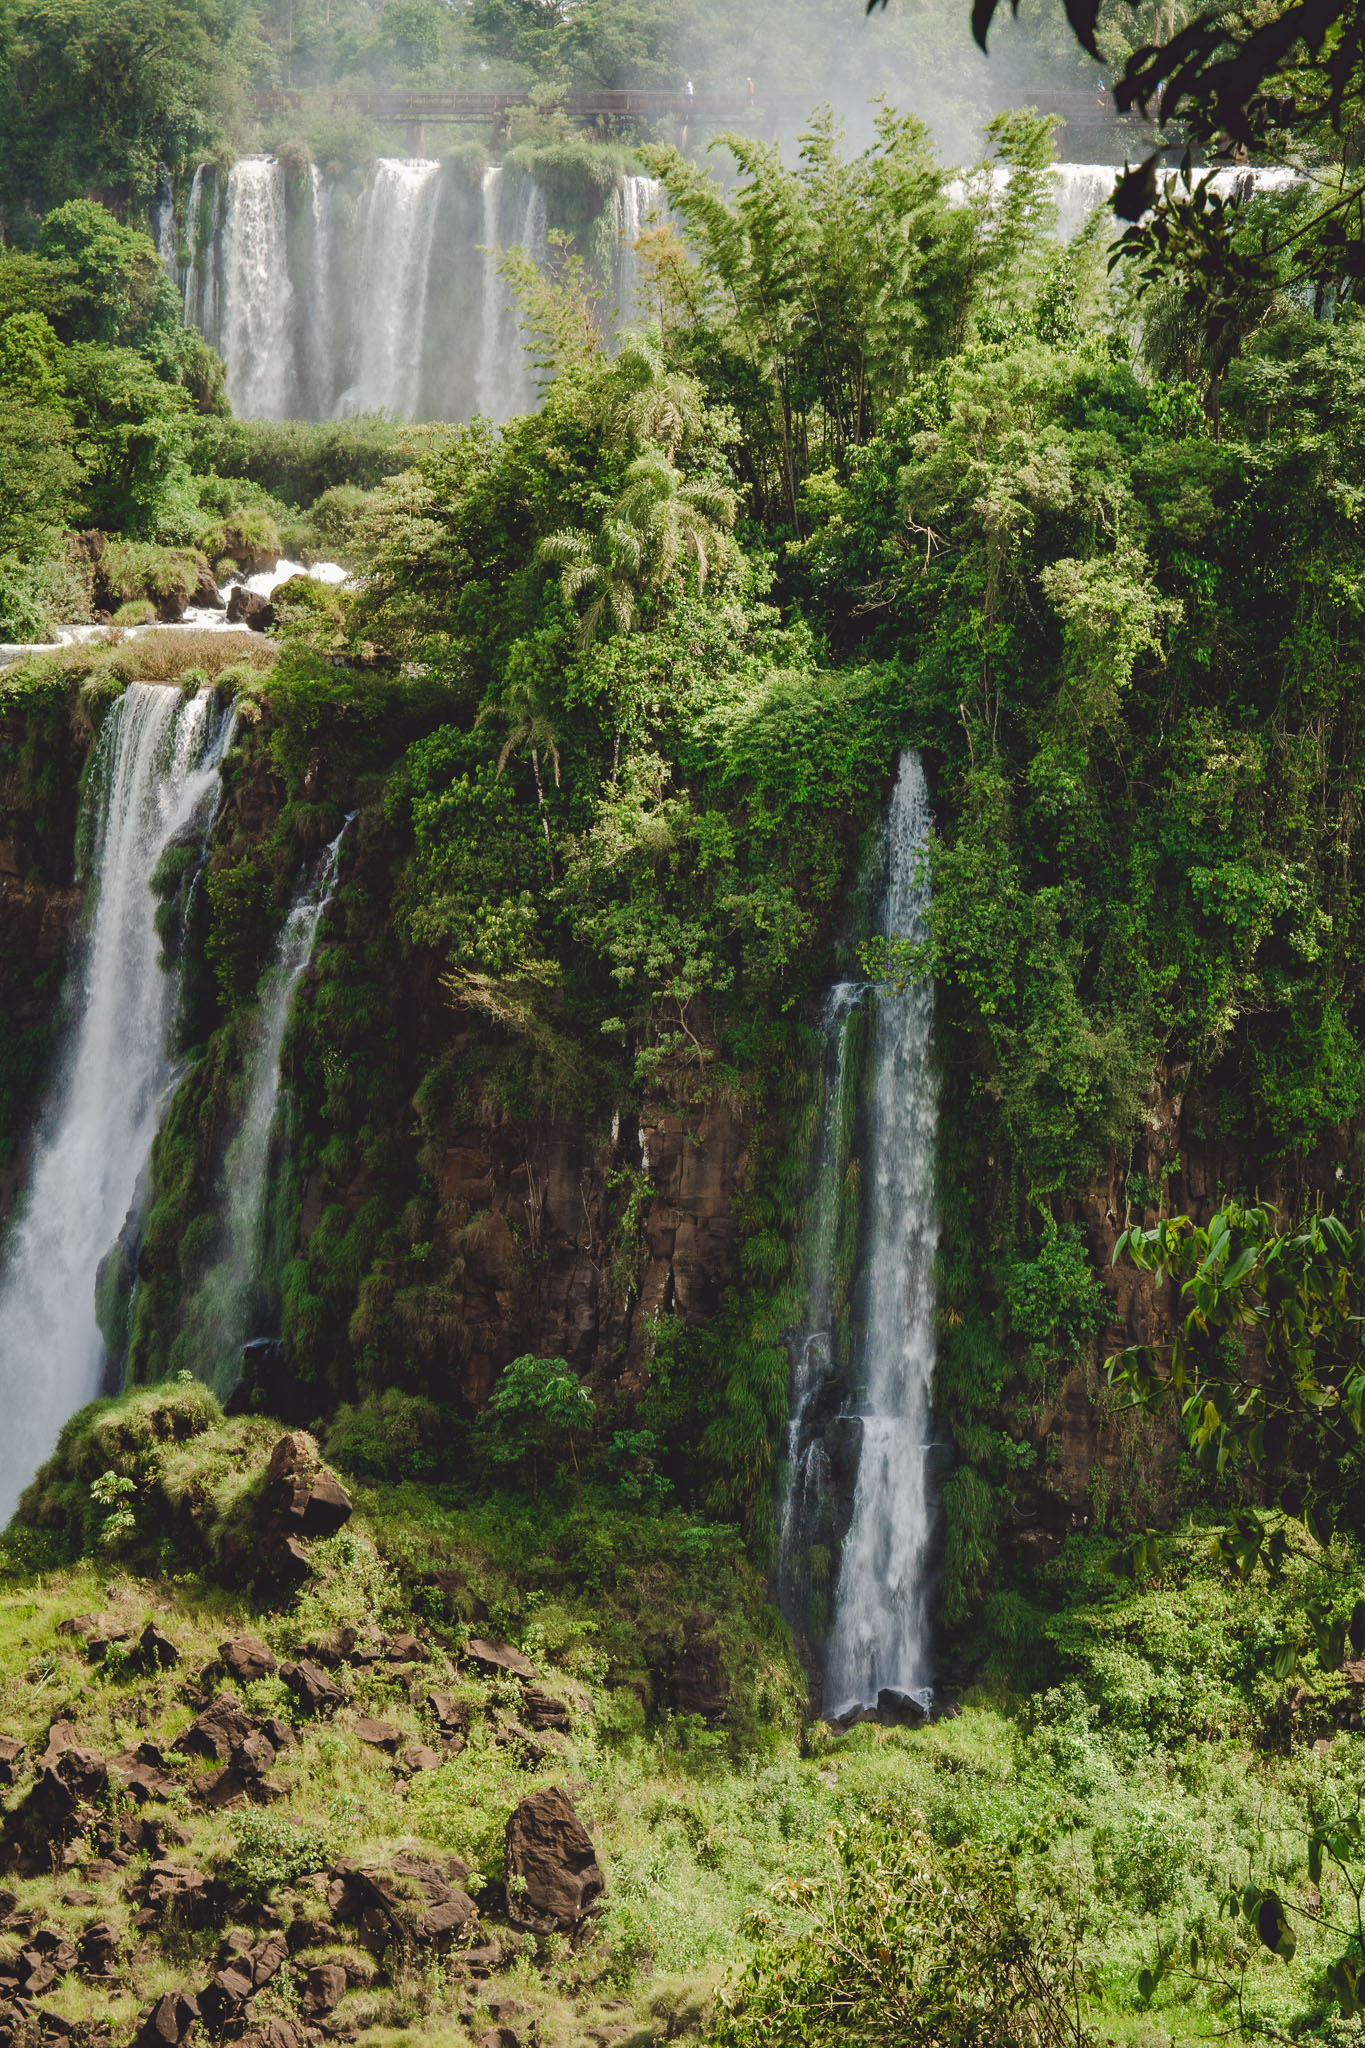 podróż-do-brazylii-co-warto-zobaczyć-brazylia-wodospady-iguacu-iguazu-blog